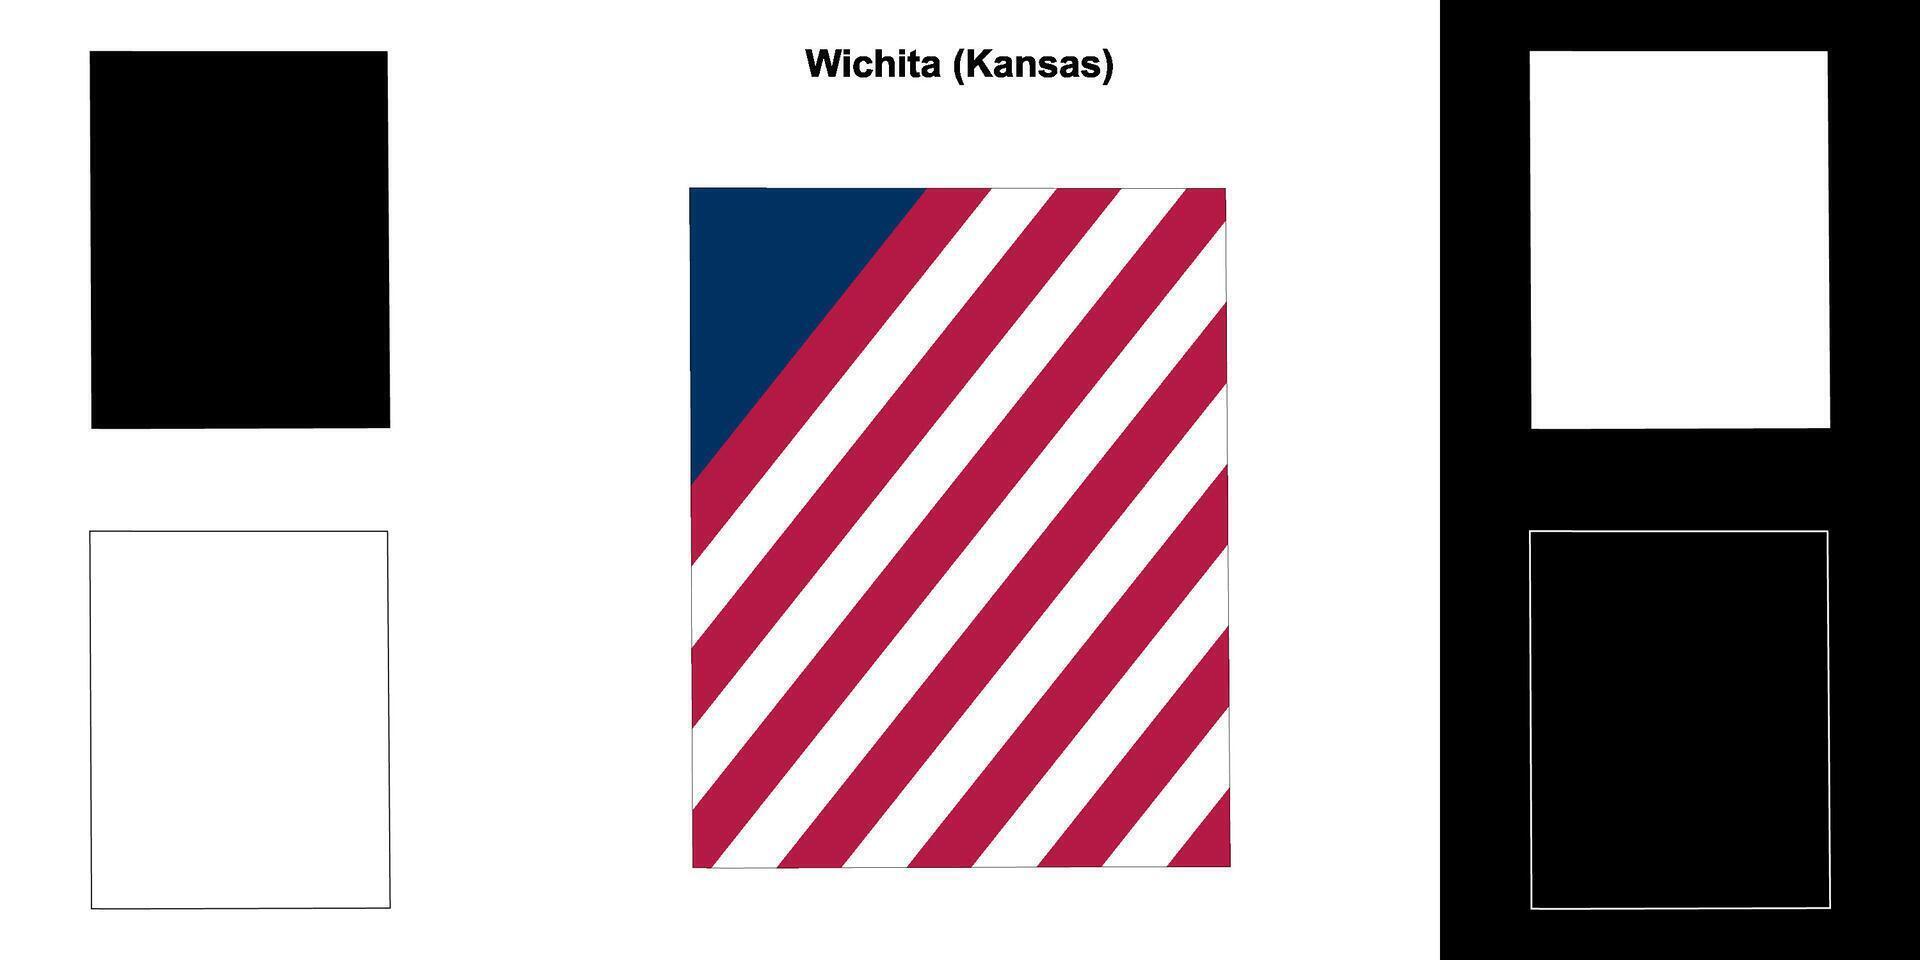 Wichita condado, Kansas esboço mapa conjunto vetor